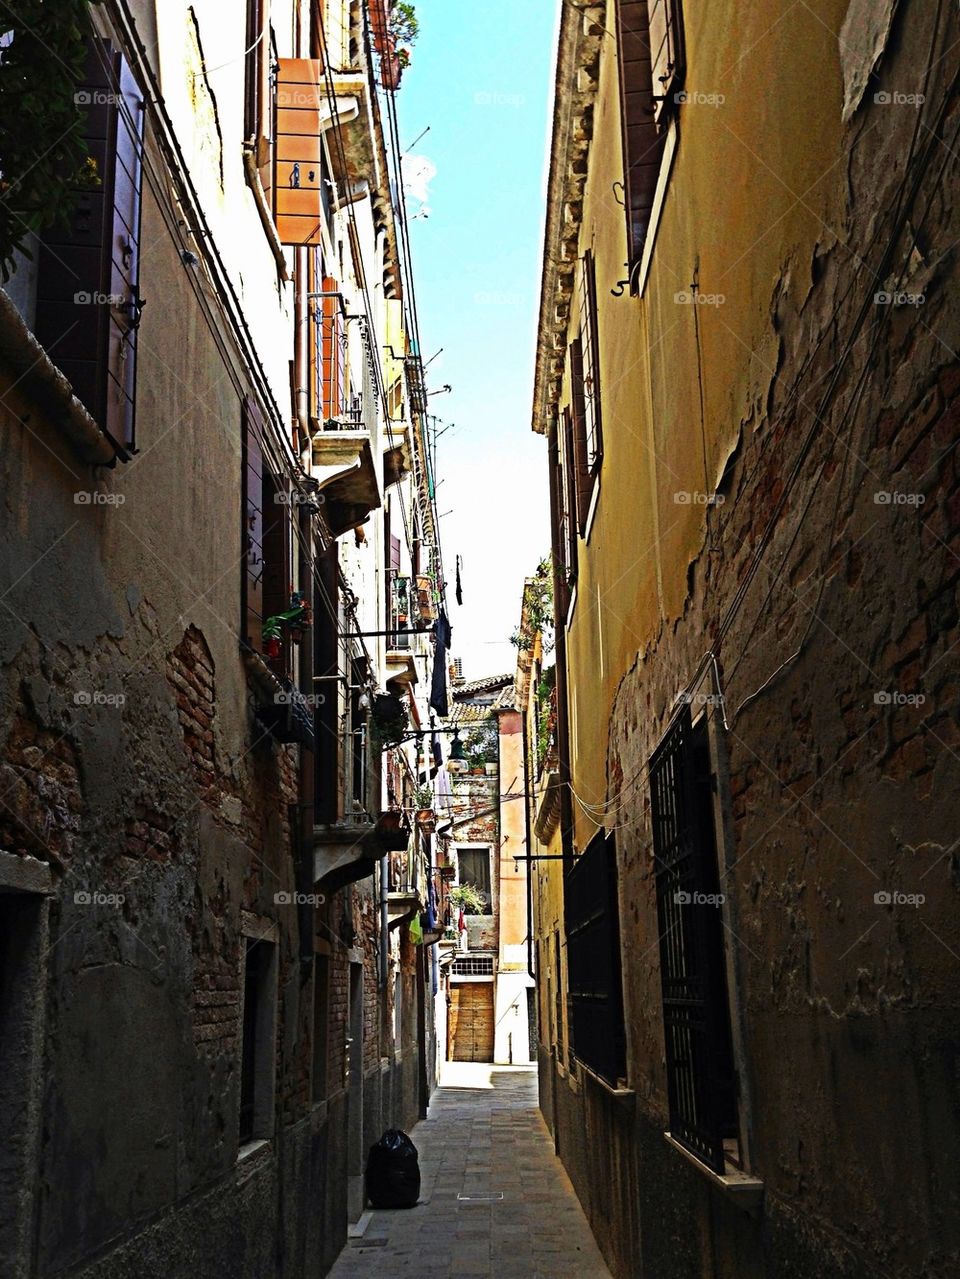 Narrow Street of Venice